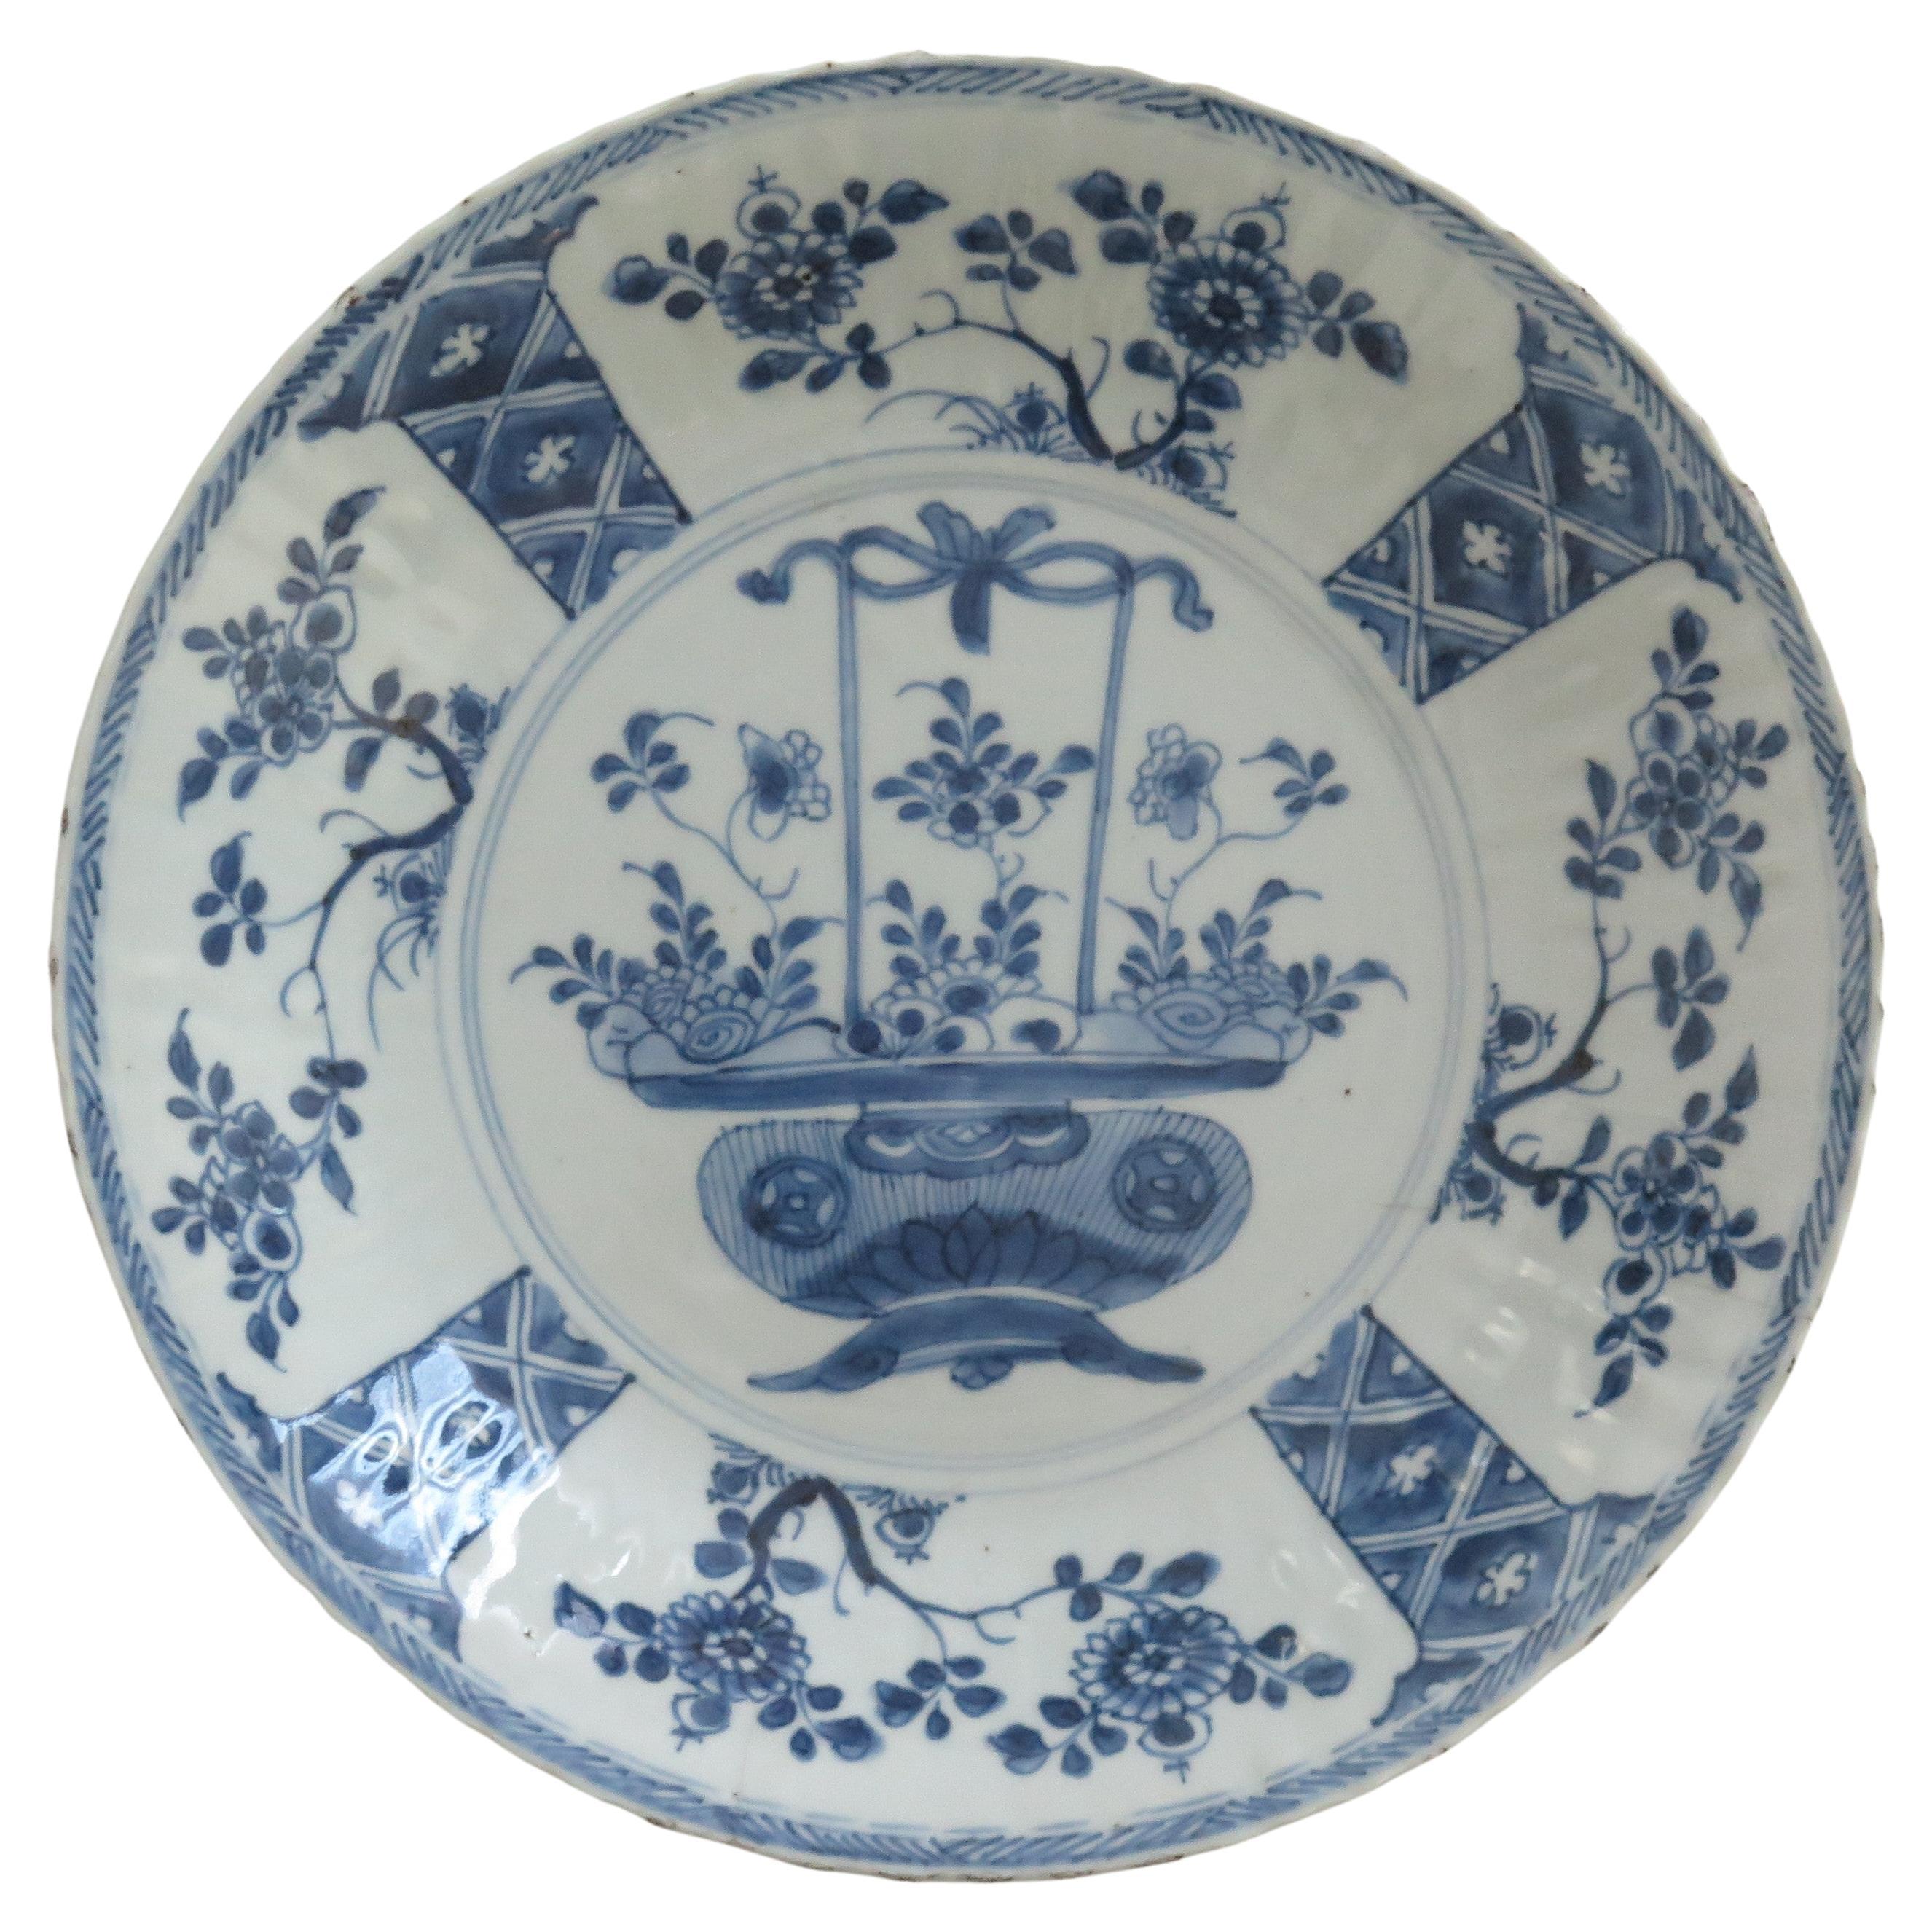 Grand plat ou assiette chinois en porcelaine bleue et blanche, Yongzheng, vers 1730